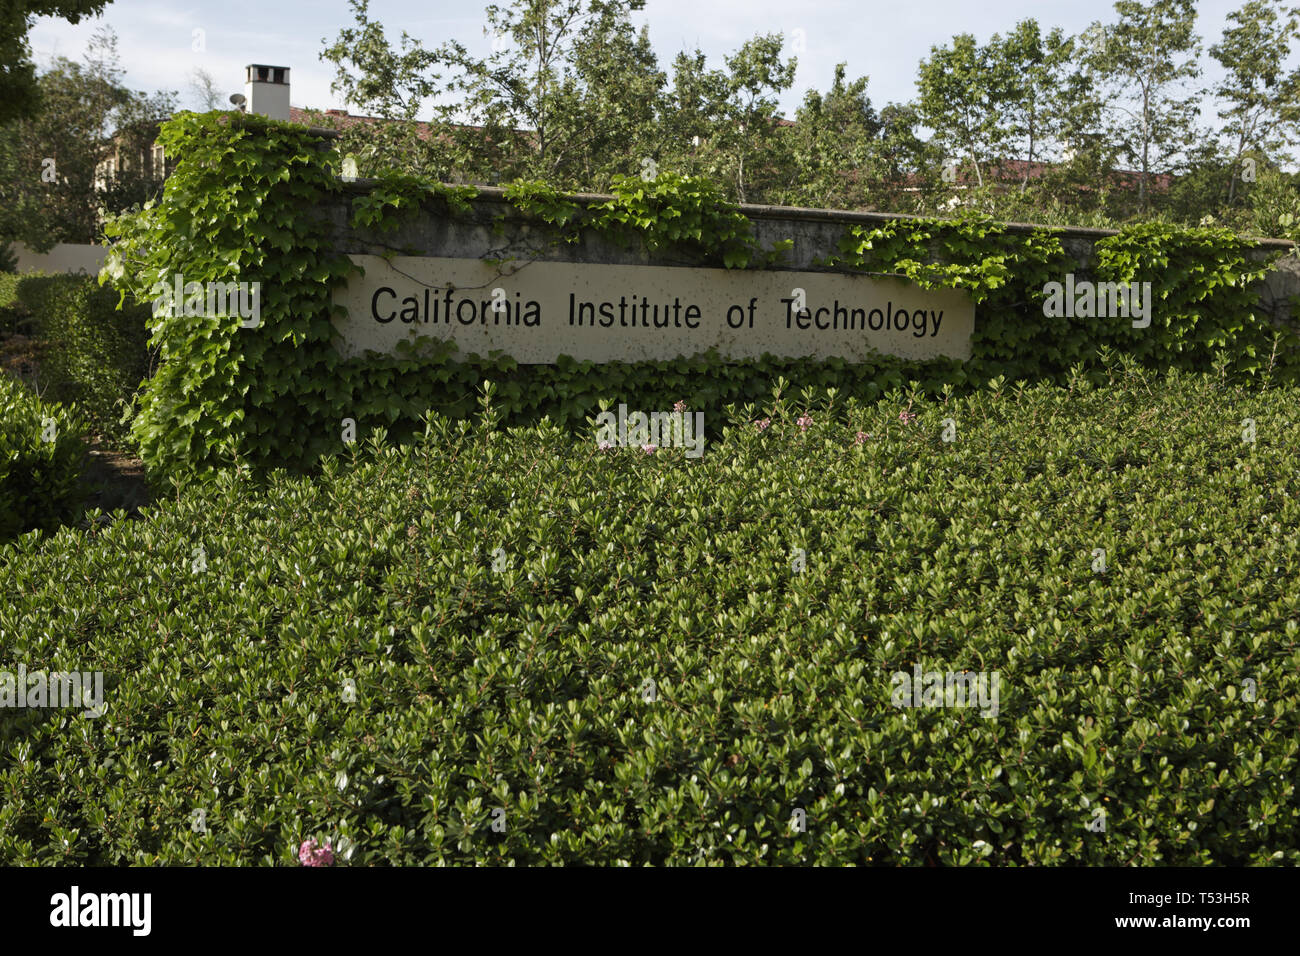 Caltech sign on campus, California, USA Stock Photo